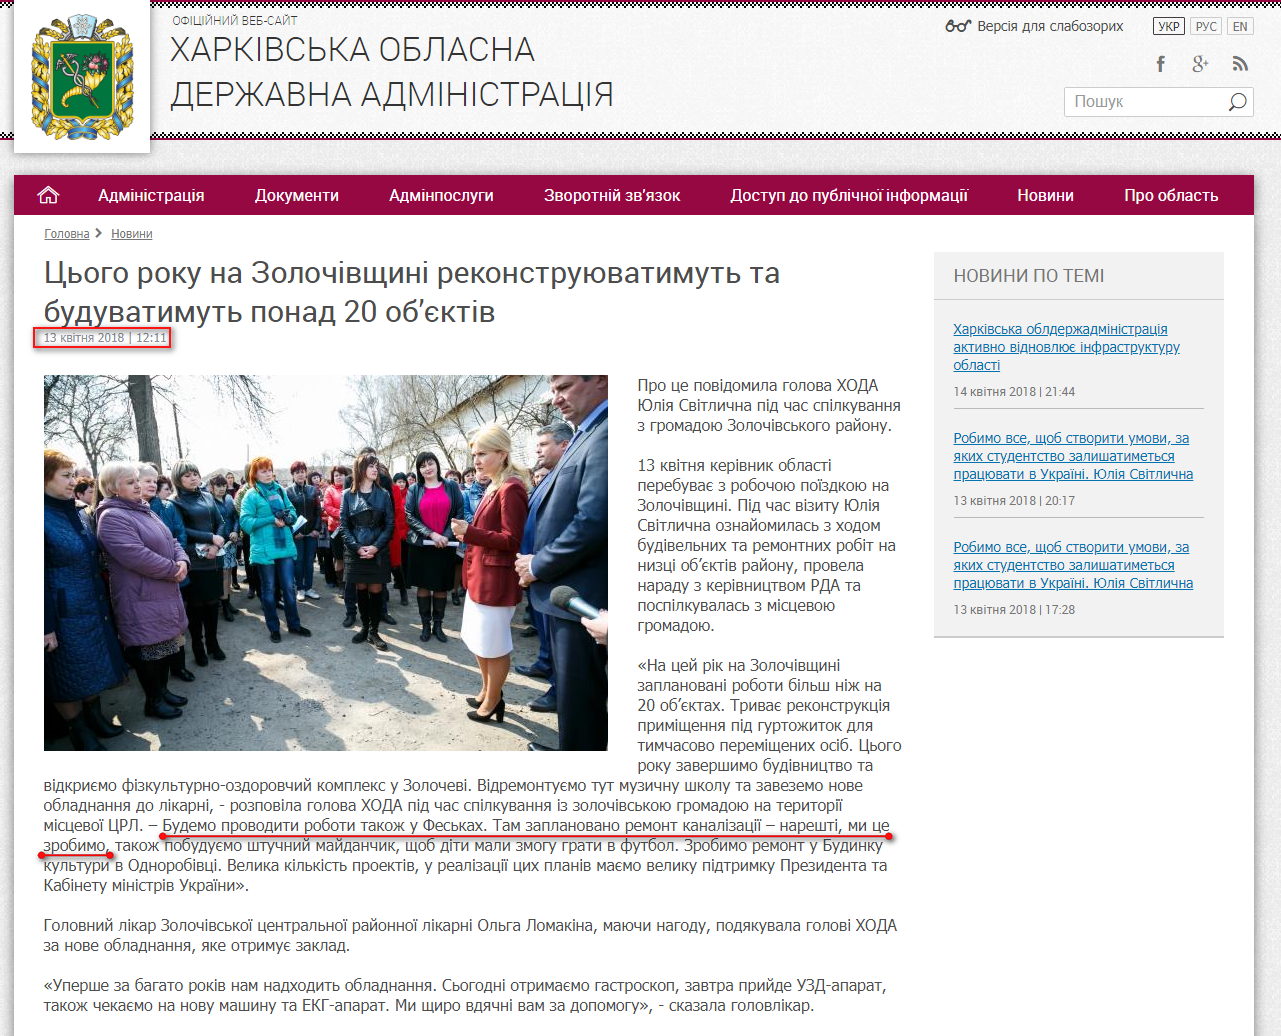 http://kharkivoda.gov.ua/news/92291